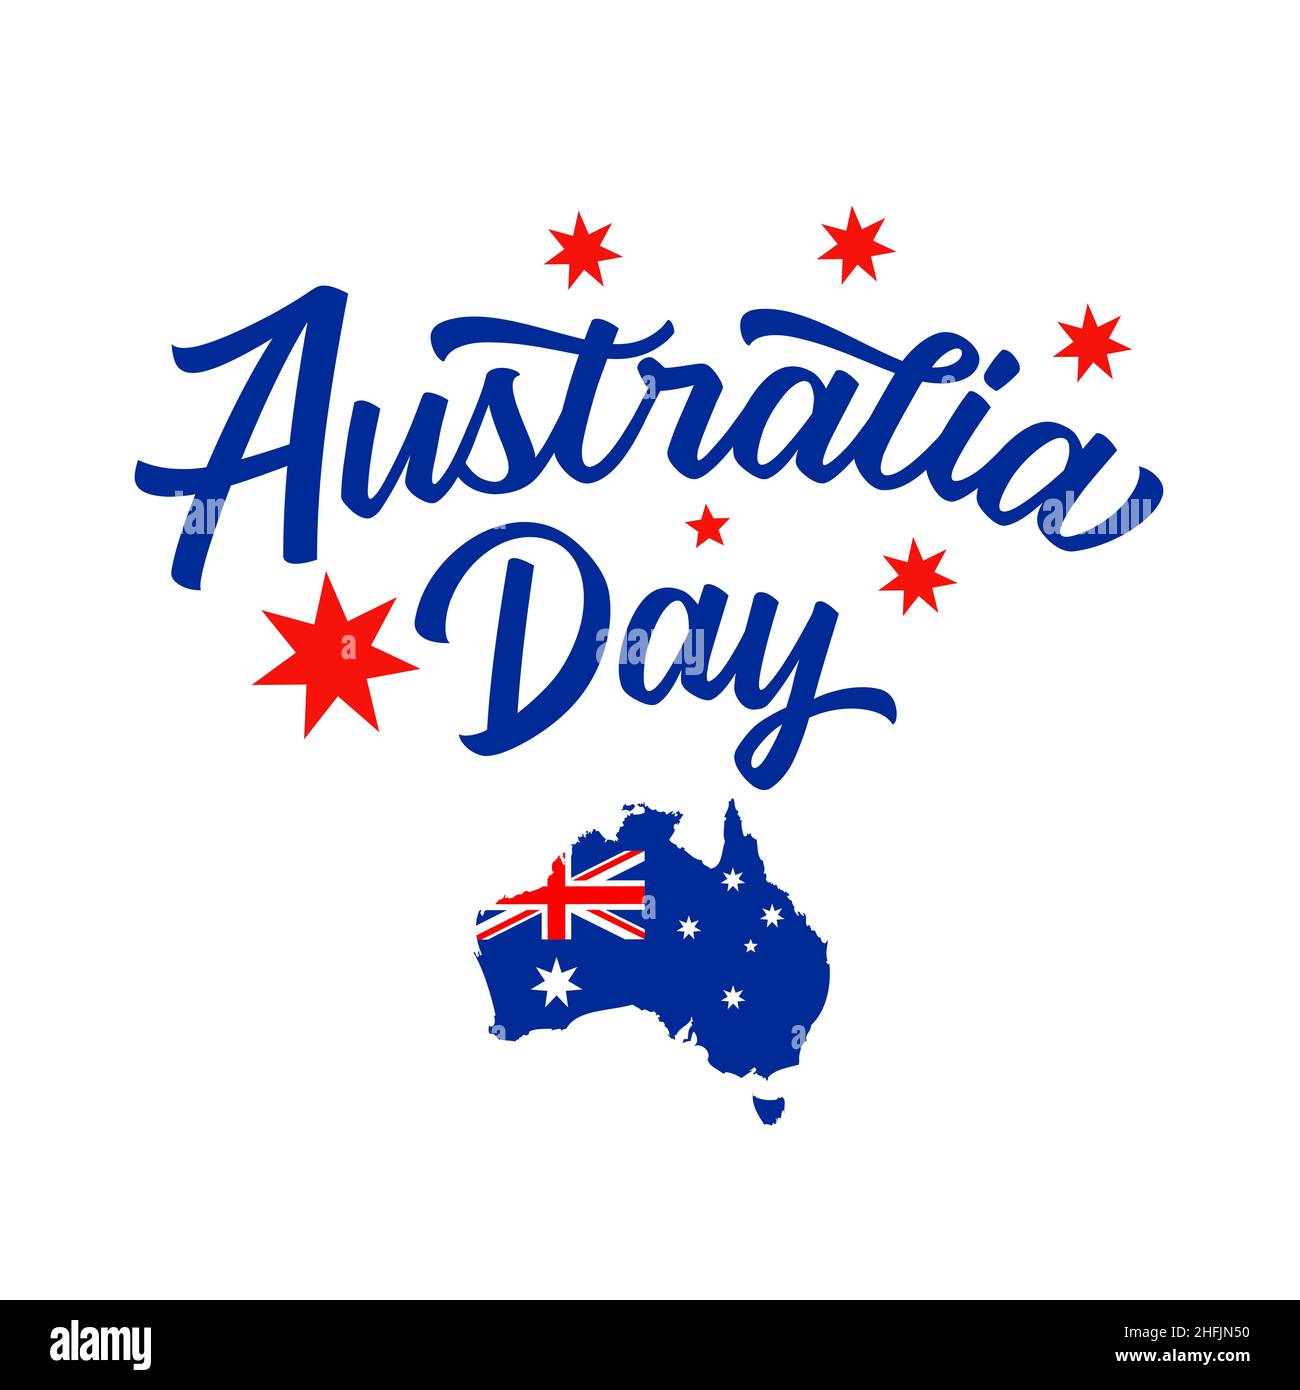 La scritta Australia Day e la mappa australiana con bandiera. Mappa dell'Australia con decorazione della bandiera nazionale e testo di saluto. Illustrazione vettoriale Illustrazione Vettoriale